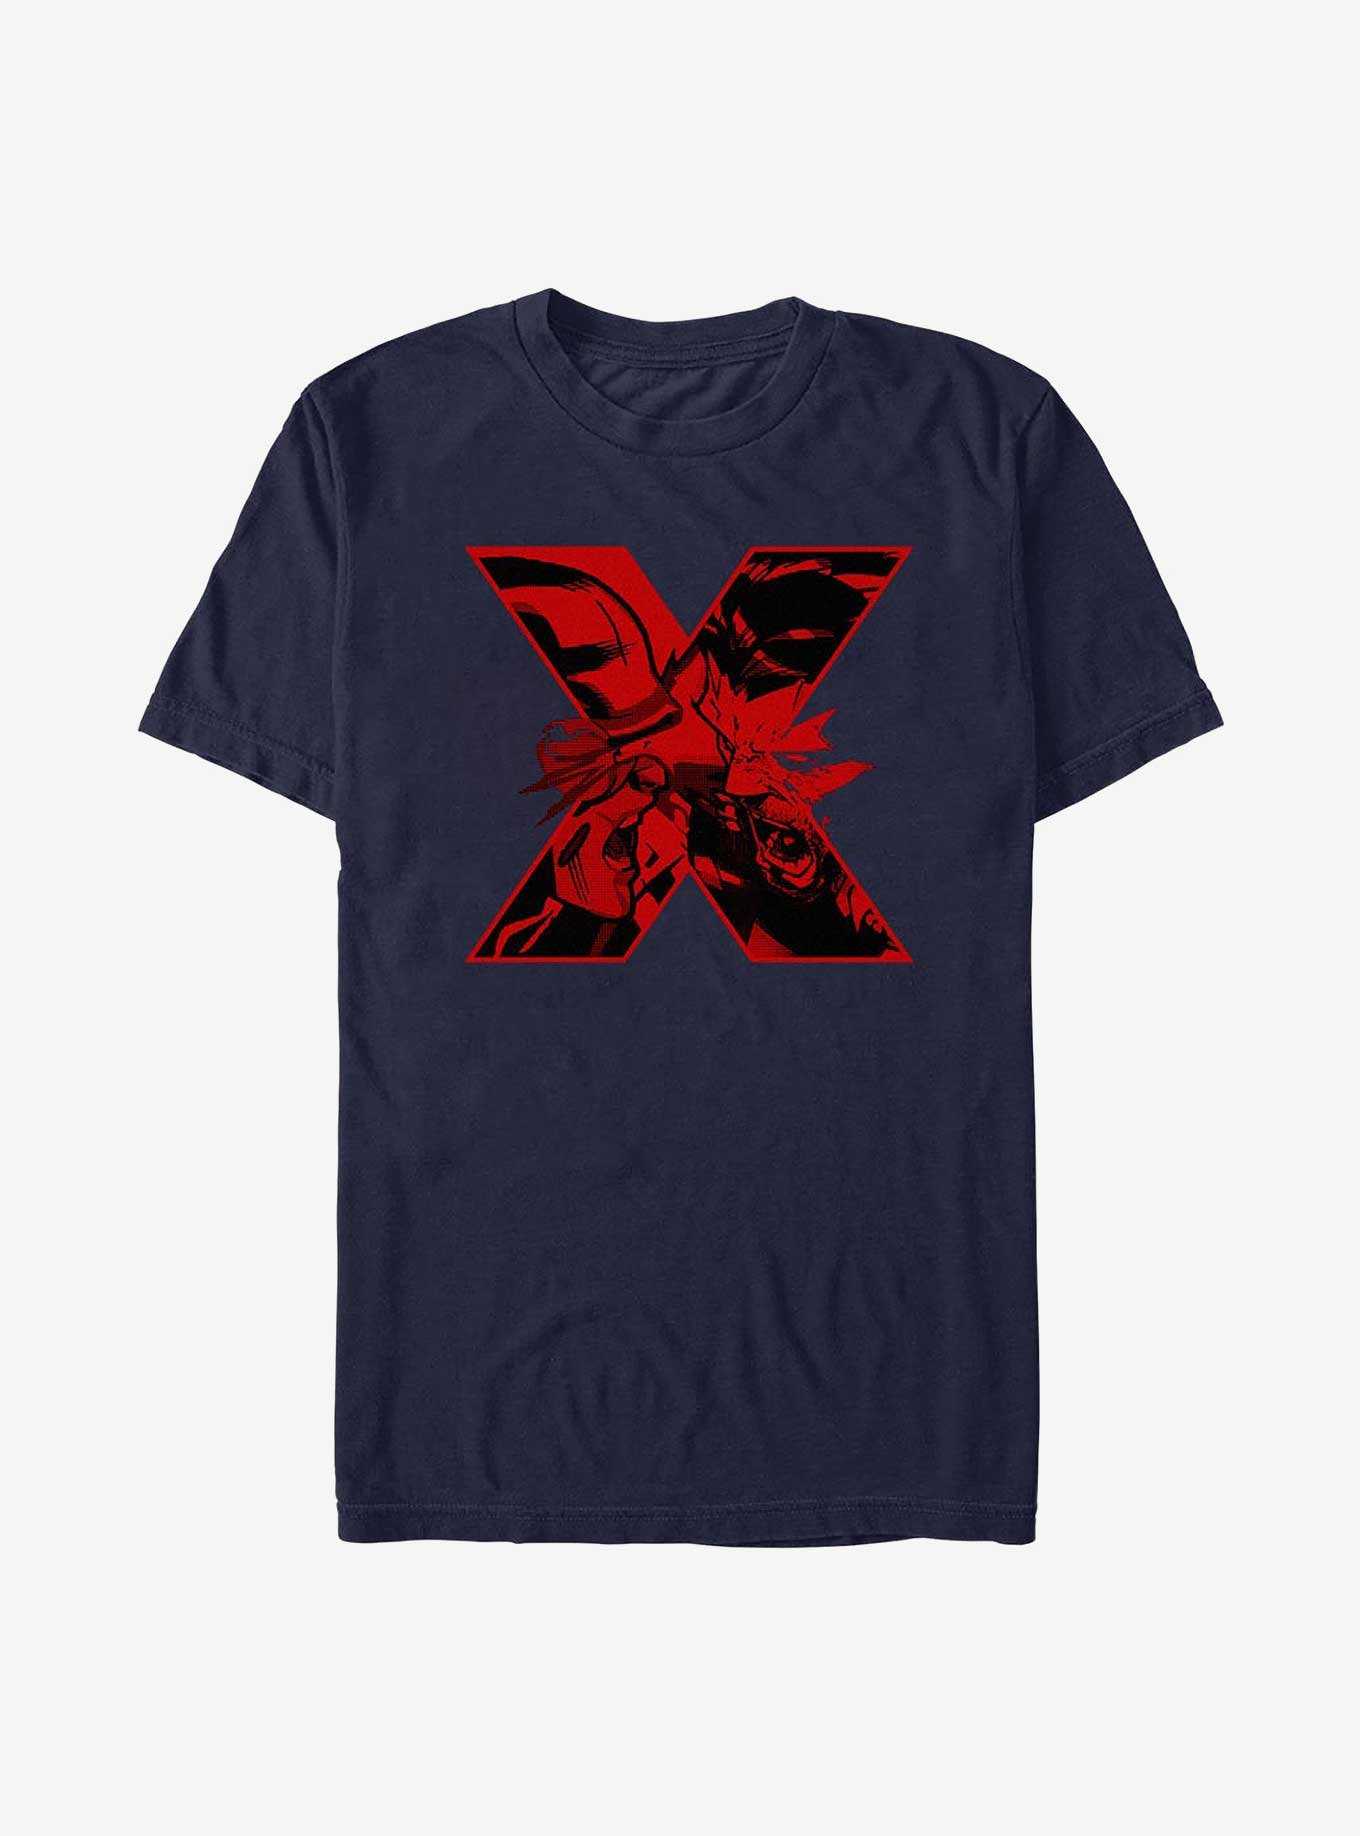 X-Men Cyclops X Wolverine T-Shirt, , hi-res